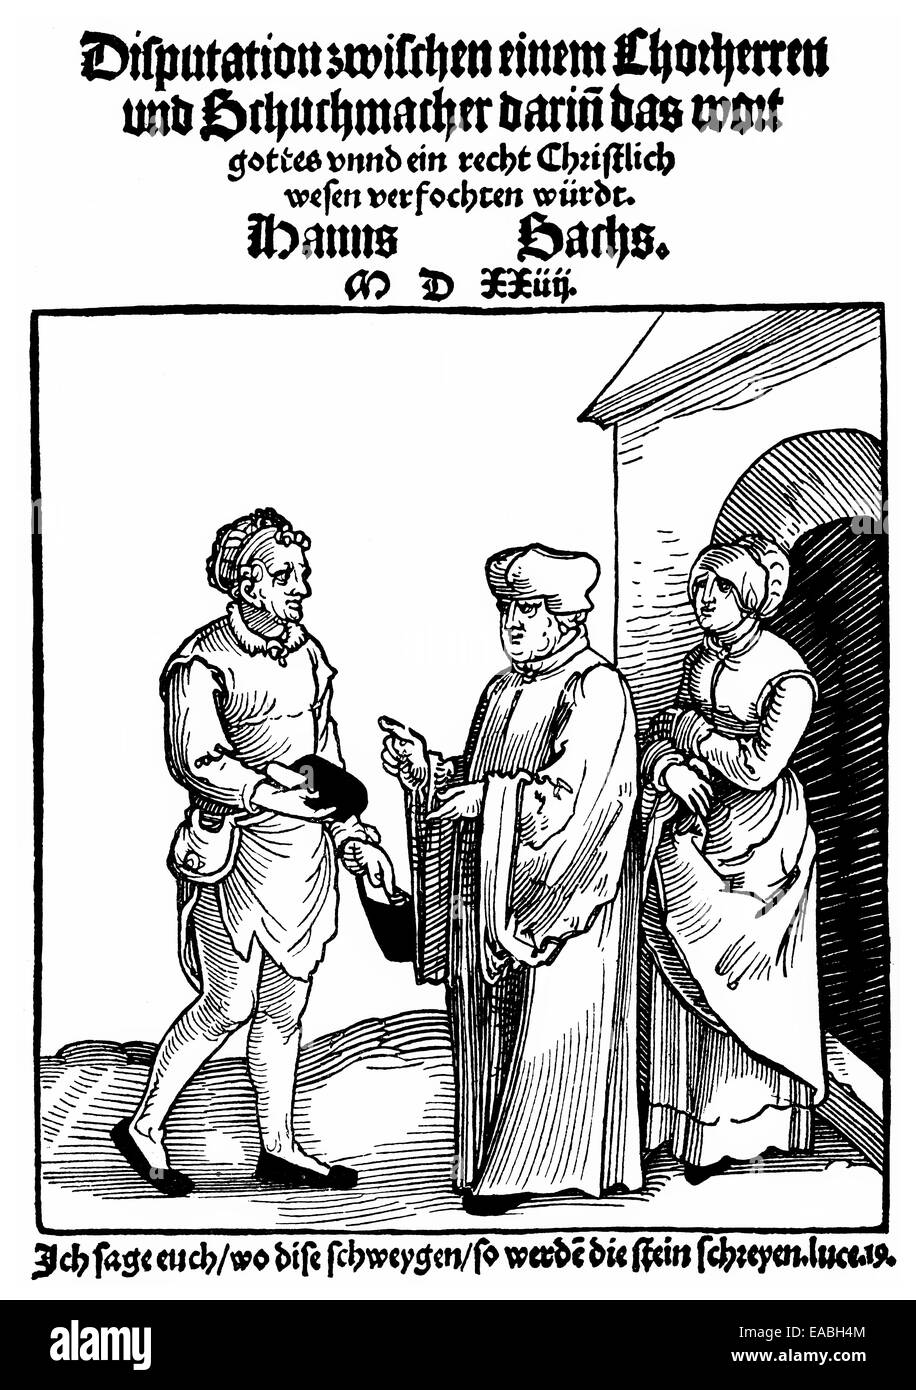 1524, pagina anteriore da Hans Sachs, 1494 - 1576, un poeta di Norimberga, drammaturgo e Meistersinger, Holzschnitt von 1524, Titelseite vo Foto Stock